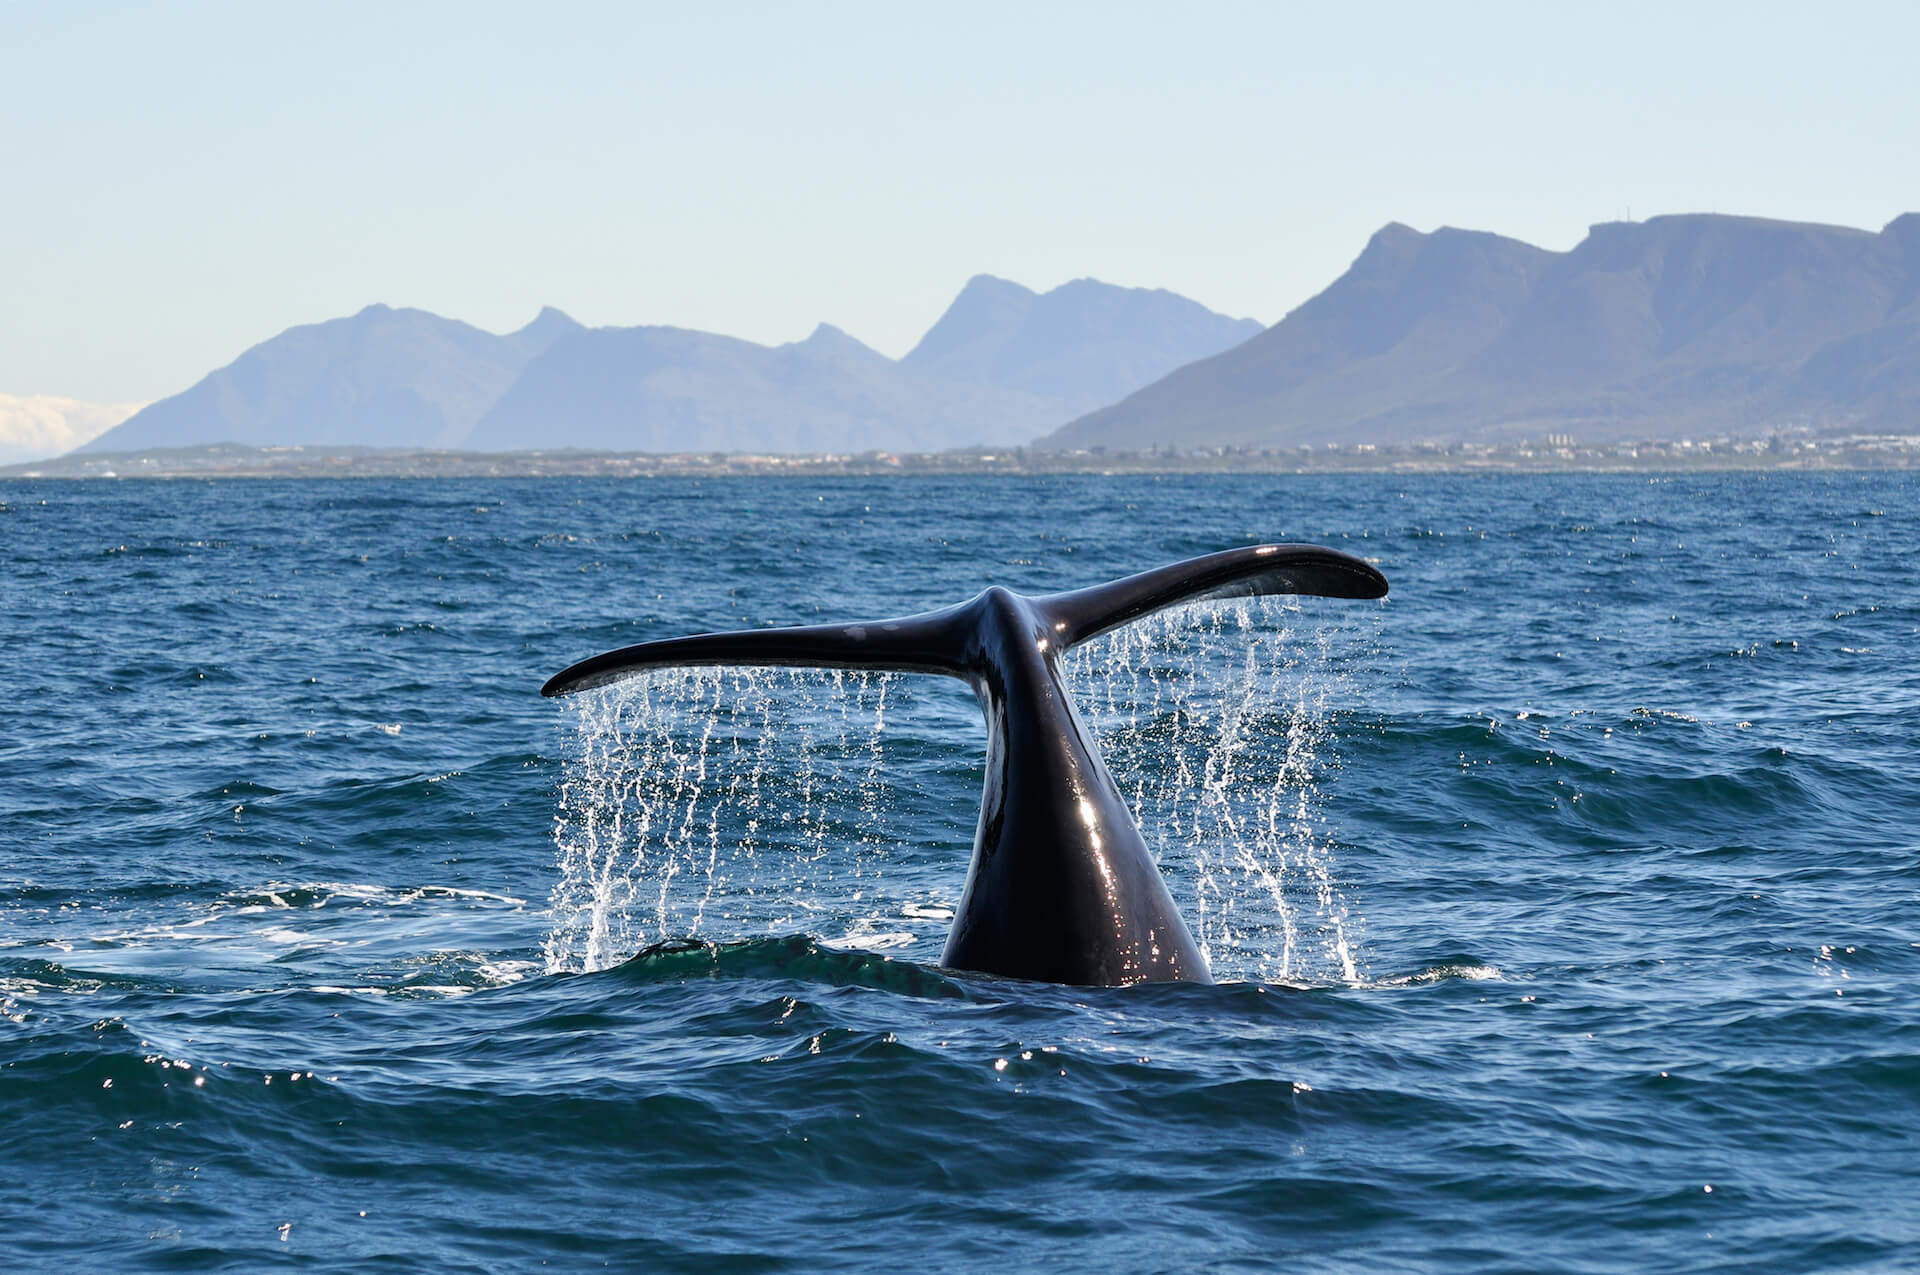 ogon wieloryba wynurzający się z wody